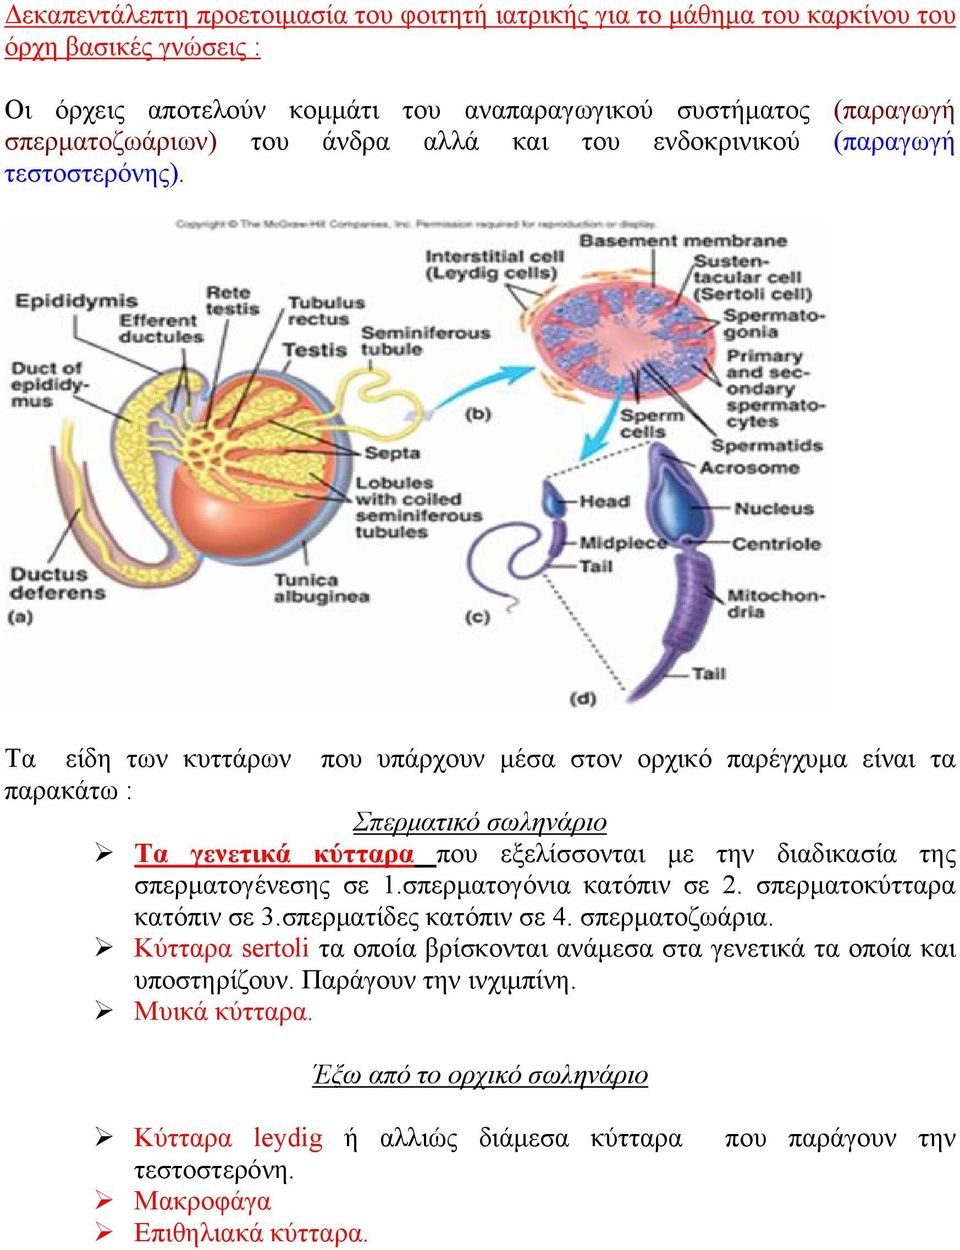 Τα είδη των κυττάρων που υπάρχουν μέσα στον ορχικό παρέγχυμα είναι τα παρακάτω : Σπερματικό σωληνάριο Τα γενετικά κύτταρα που εξελίσσονται με την διαδικασία της σπερματογένεσης σε 1.